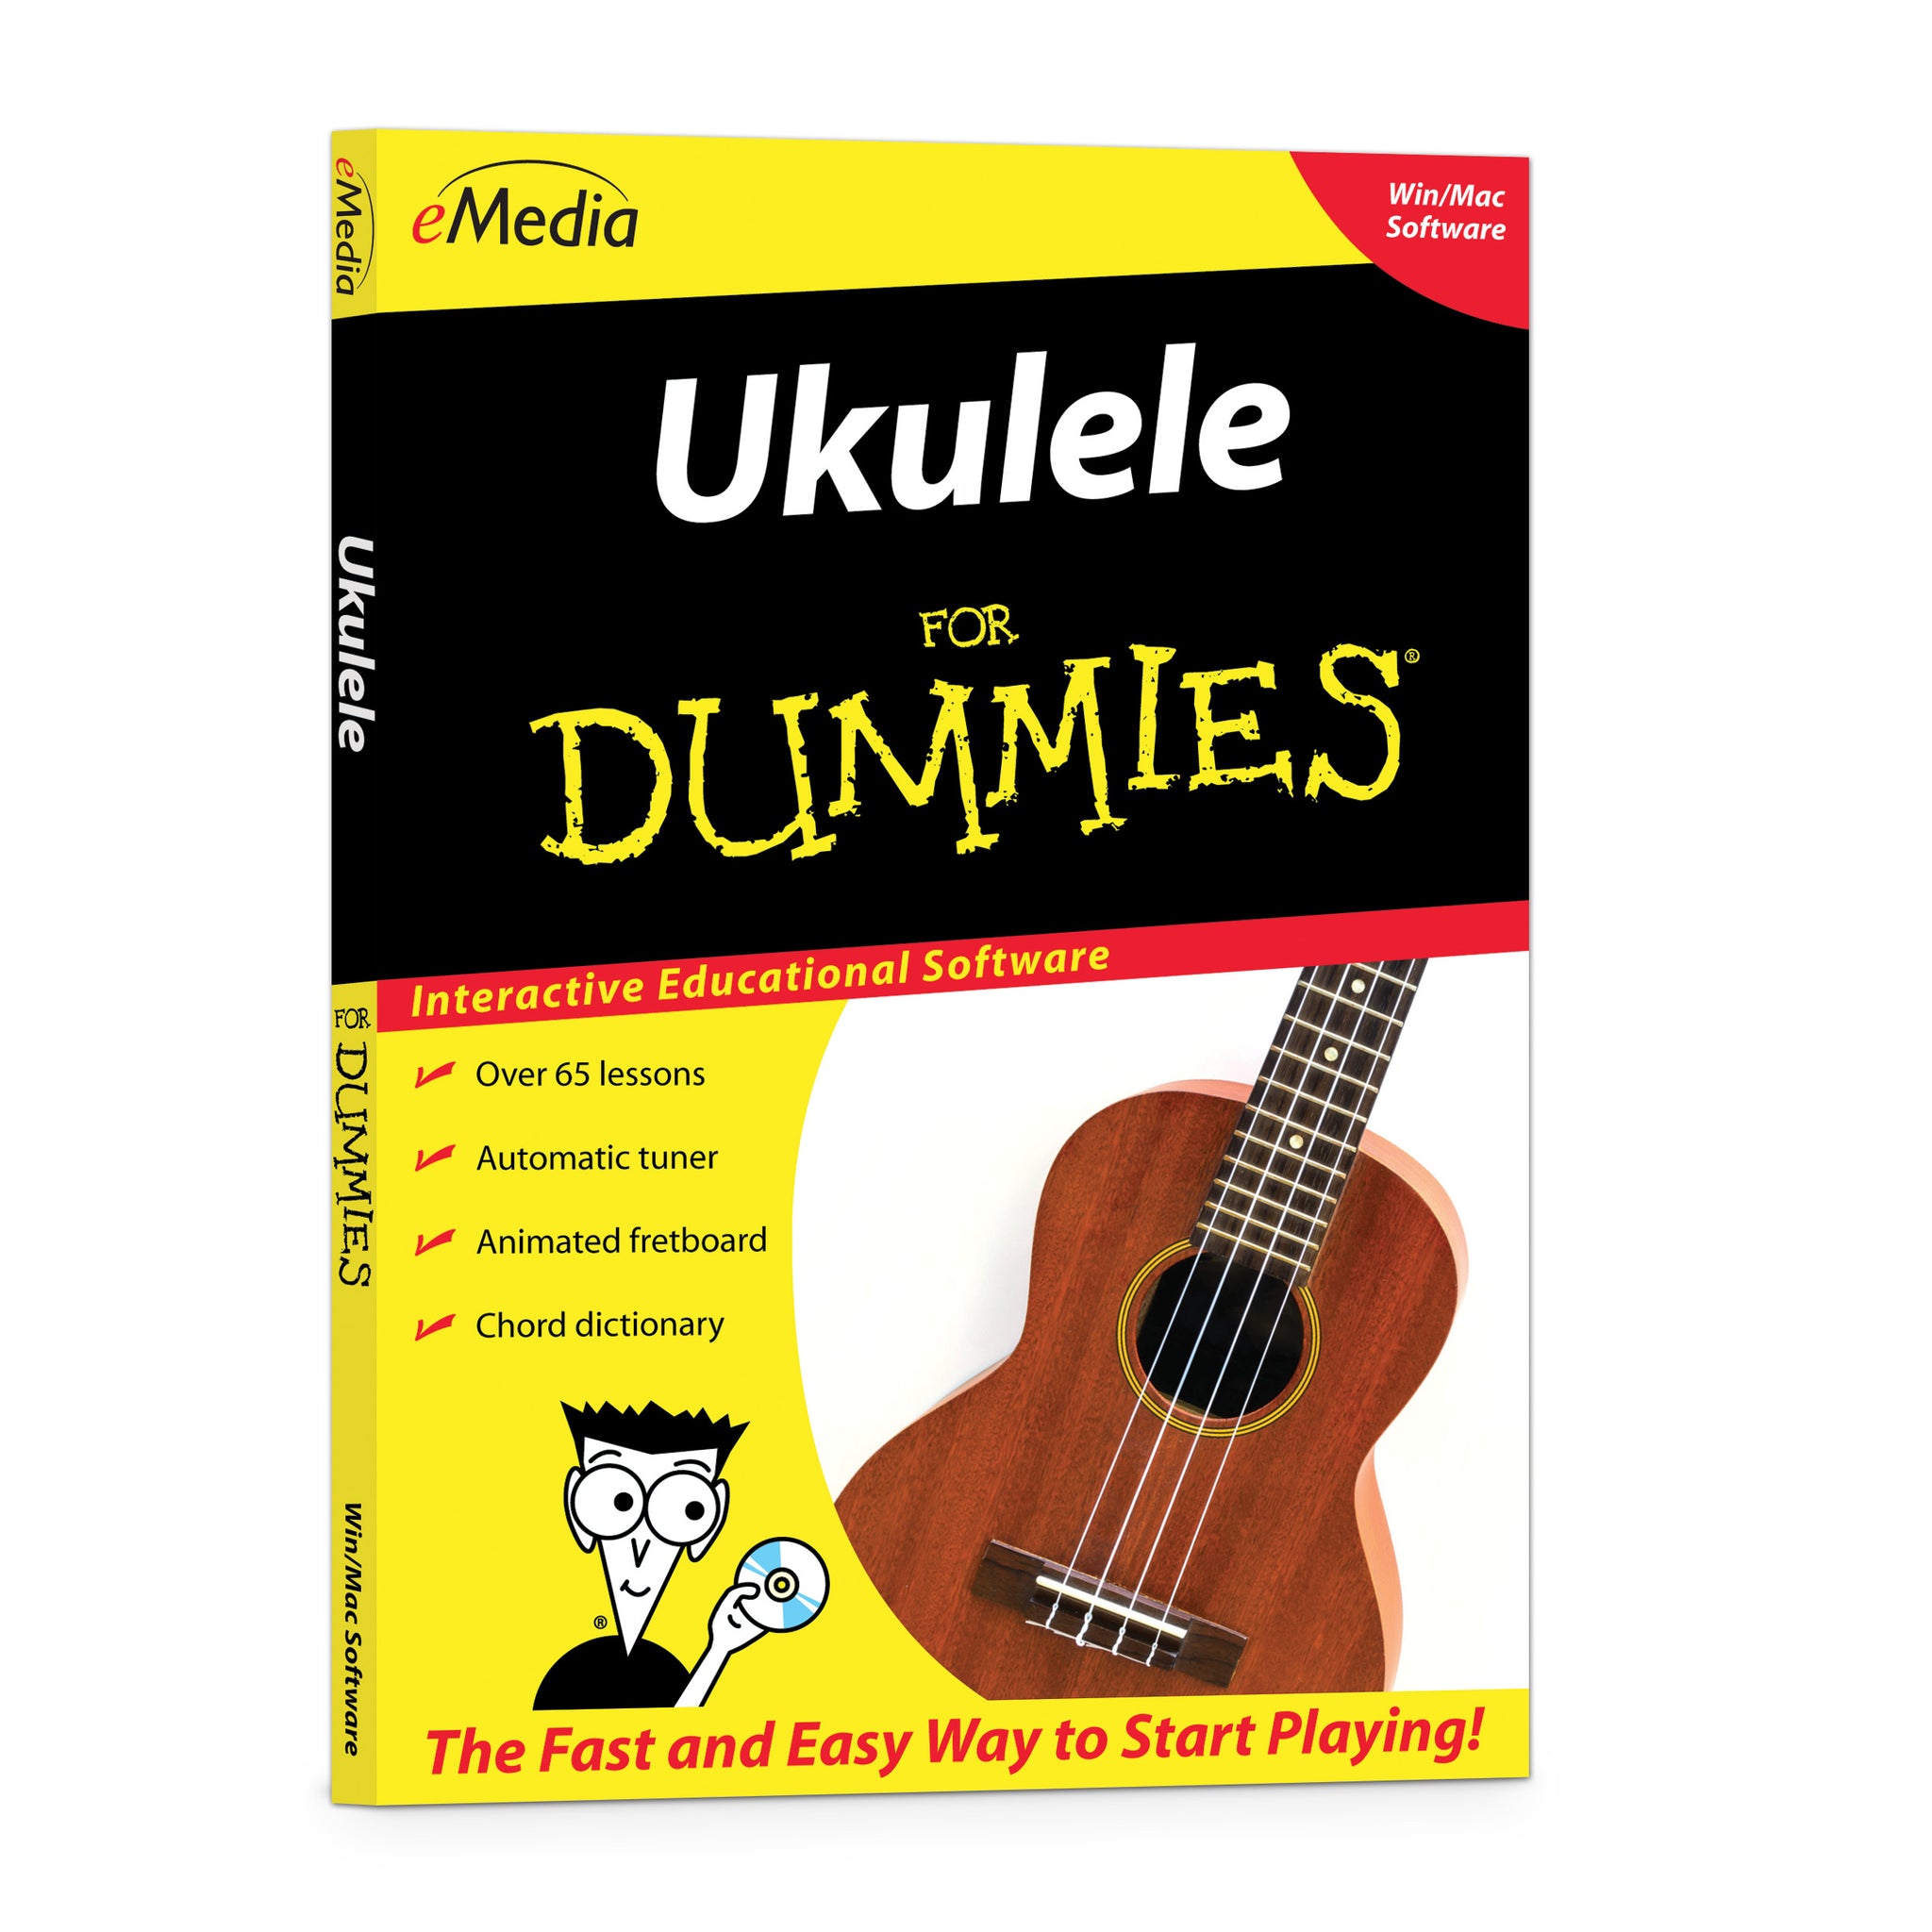 eMedia Ukulele For Dummies